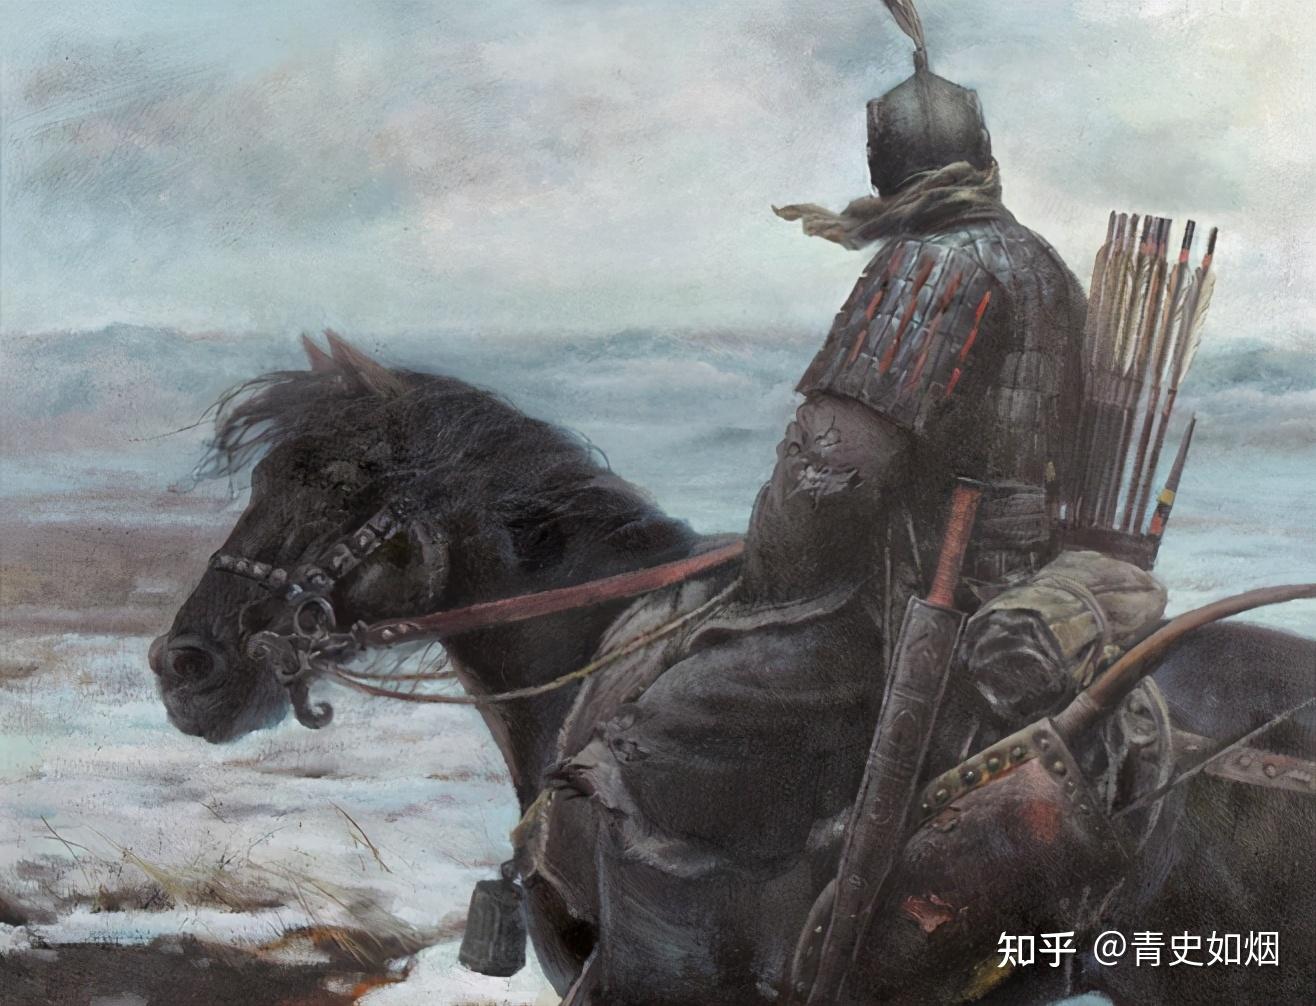 中国历史上十大好色皇帝之后梁太祖朱温—无视伦理，贪图淫乐 - 知乎